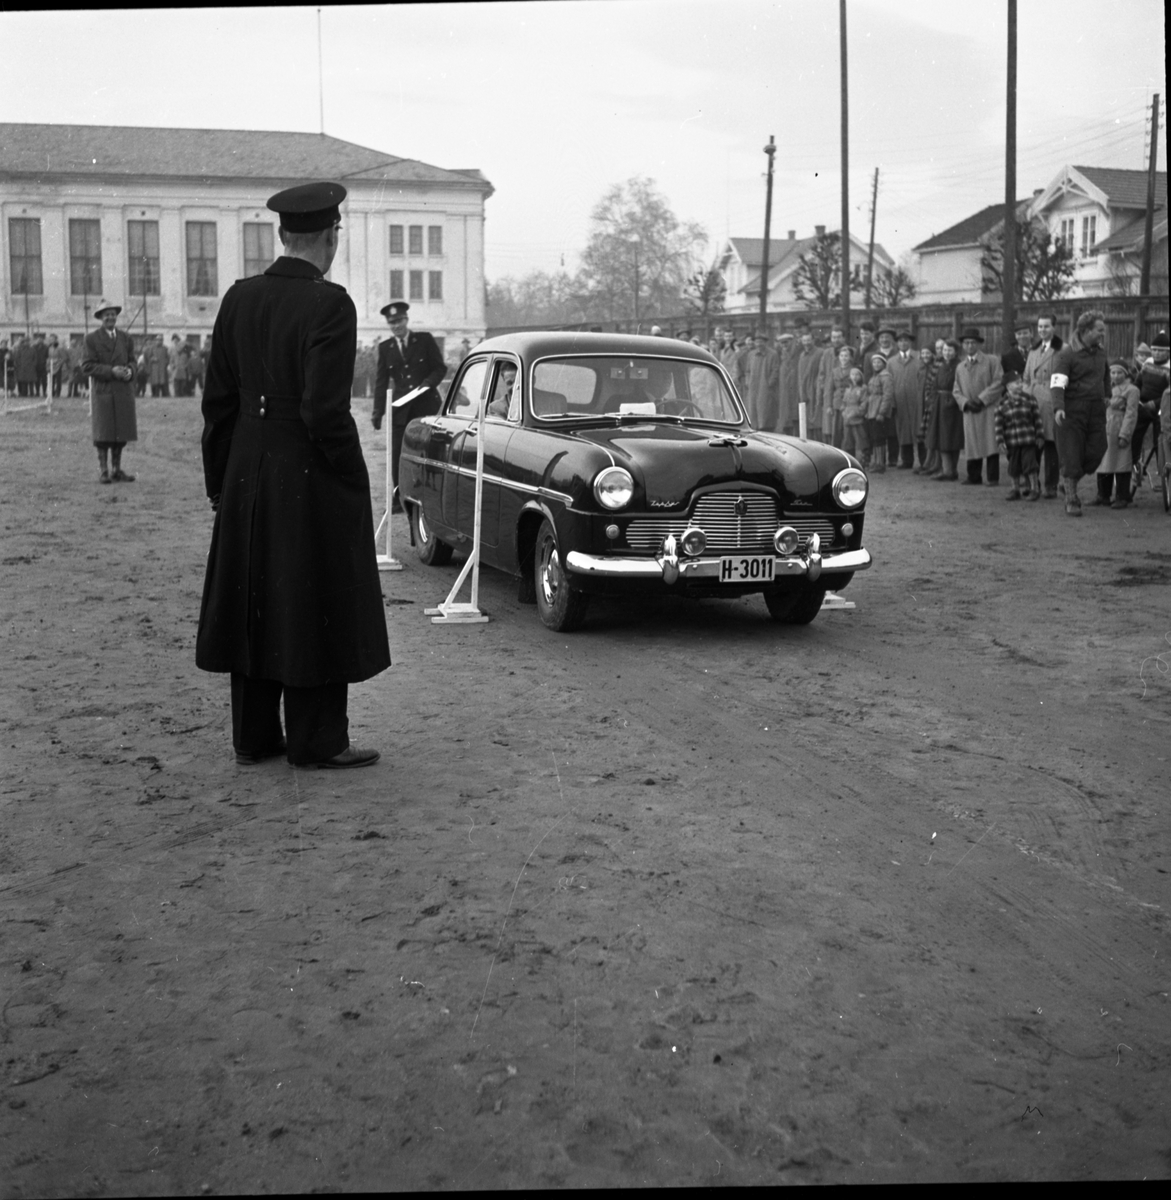 Vardens pressefotosamling. Fotografiene ble tatt i forbindelse med kontrollert promillekjøring "Brandy Spesial" arrangert av Motorførernes avholdsforening (MA) på Odds sportsplass Skien arrangert 4.11.1956.